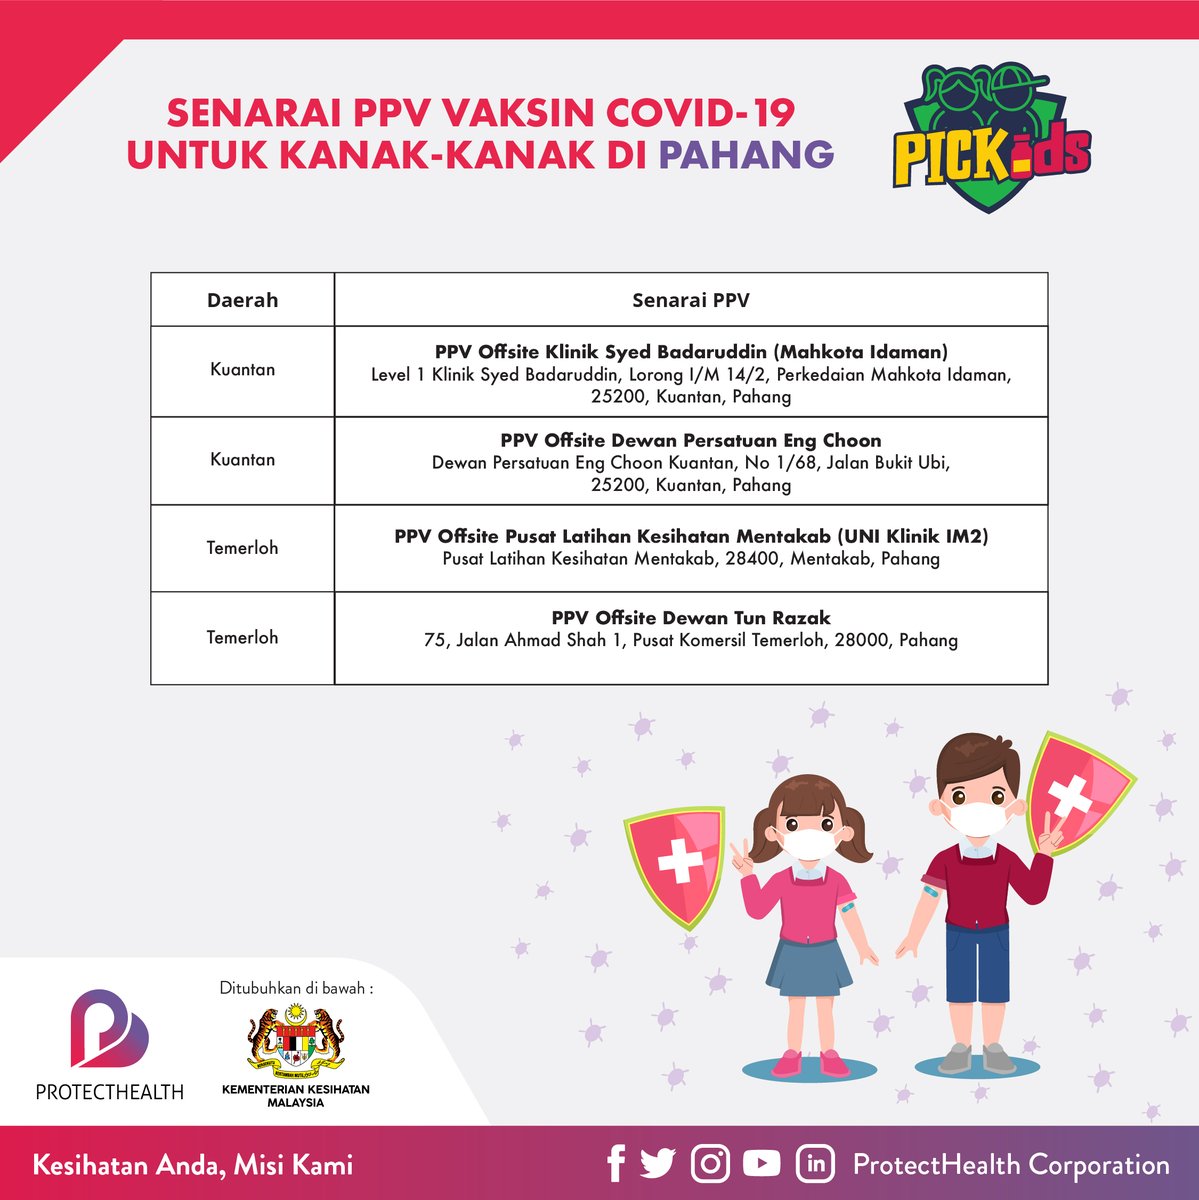 Senarai-senarai PPV #PICKids yang masih beroperasi untuk negeri Terengganu, Kelantan dan Pahang.